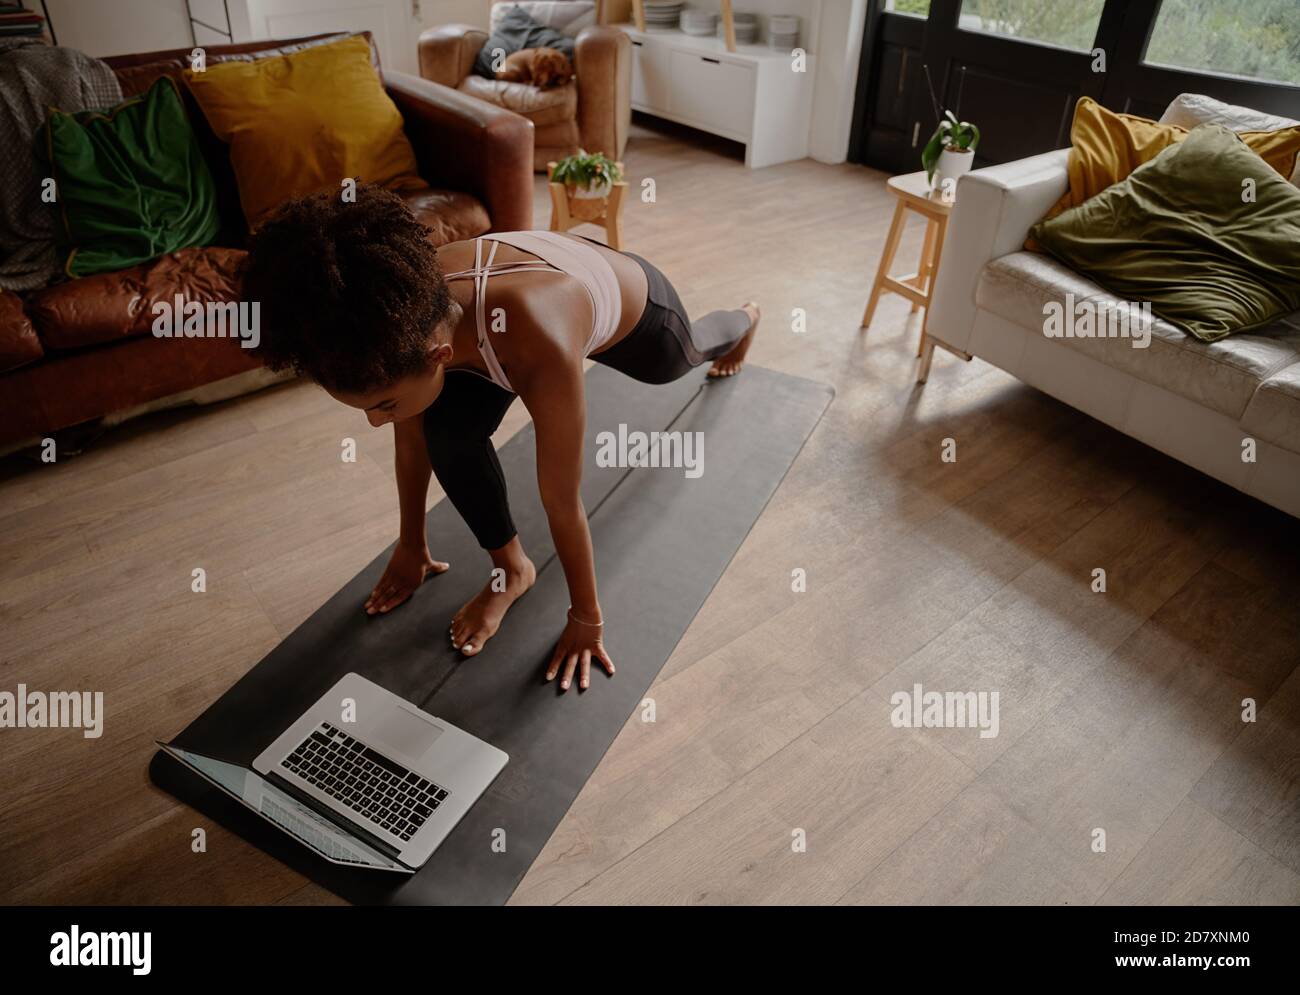 Vue en grand angle d'une femme regardant une vidéo sur un ordinateur portable faites de l'exercice sur un tapis de yoga à la maison Banque D'Images